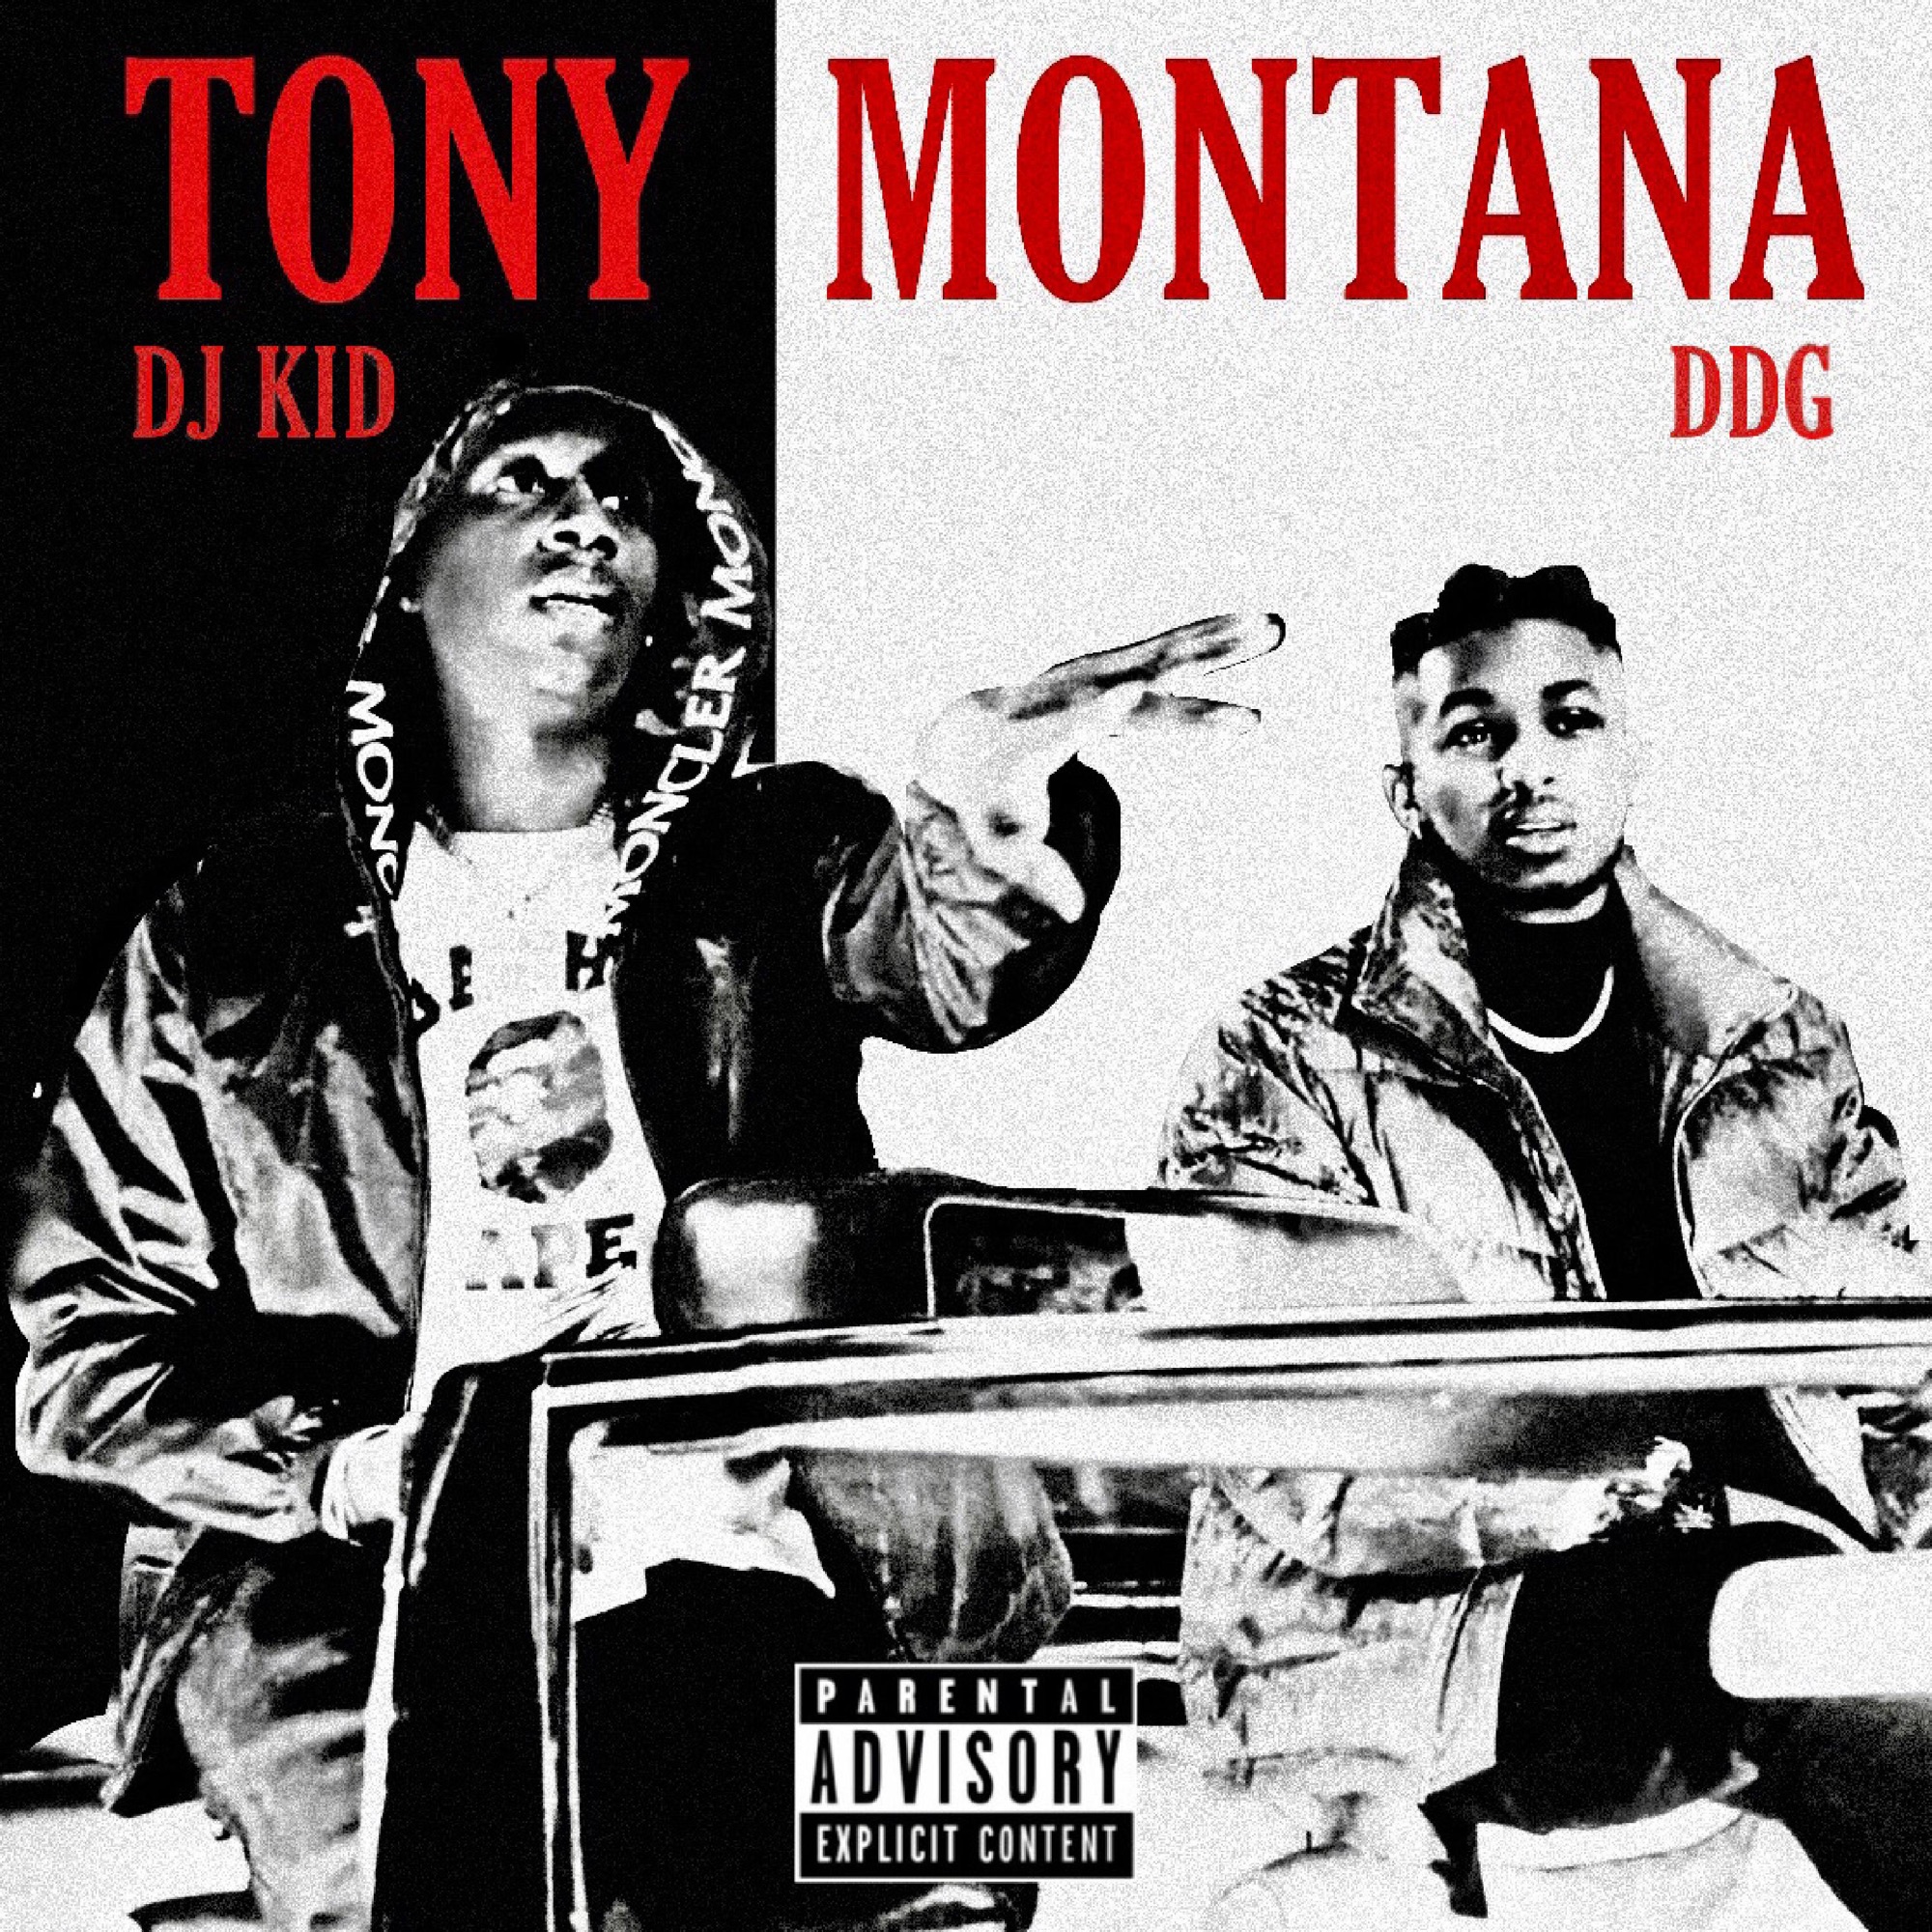 DJ Kid & DDG - Tony Montana - Single